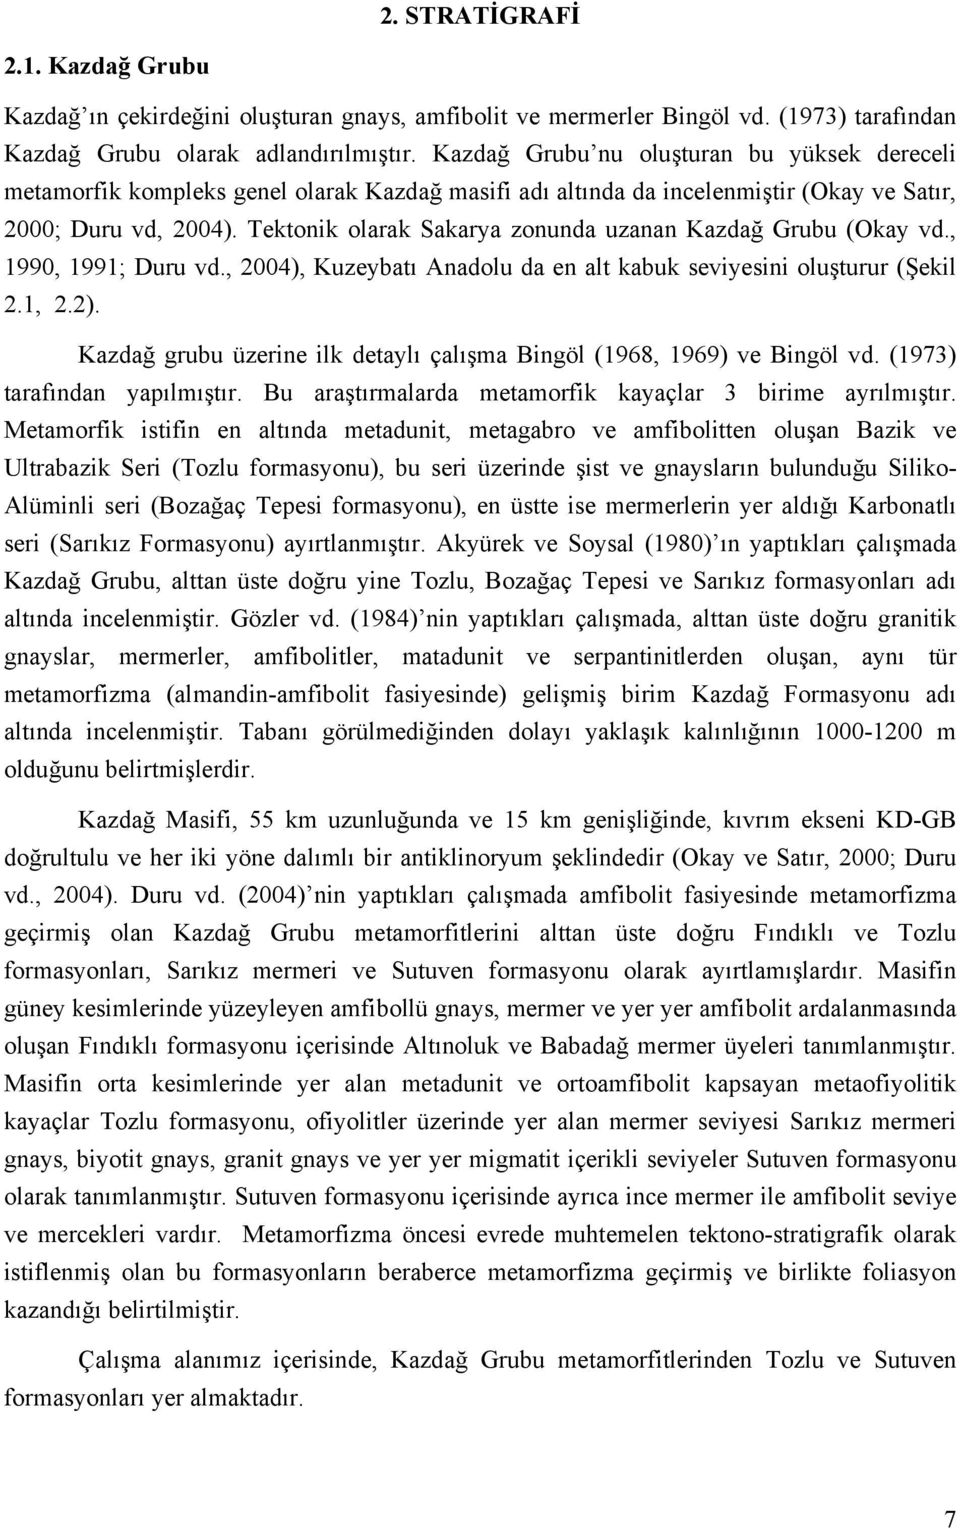 Tektonik olarak Sakarya zonunda uzanan Kazdağ Grubu (Okay vd., 1990, 1991; Duru vd., 2004), Kuzeybatı Anadolu da en alt kabuk seviyesini oluşturur (Şekil 2.1, 2.2).